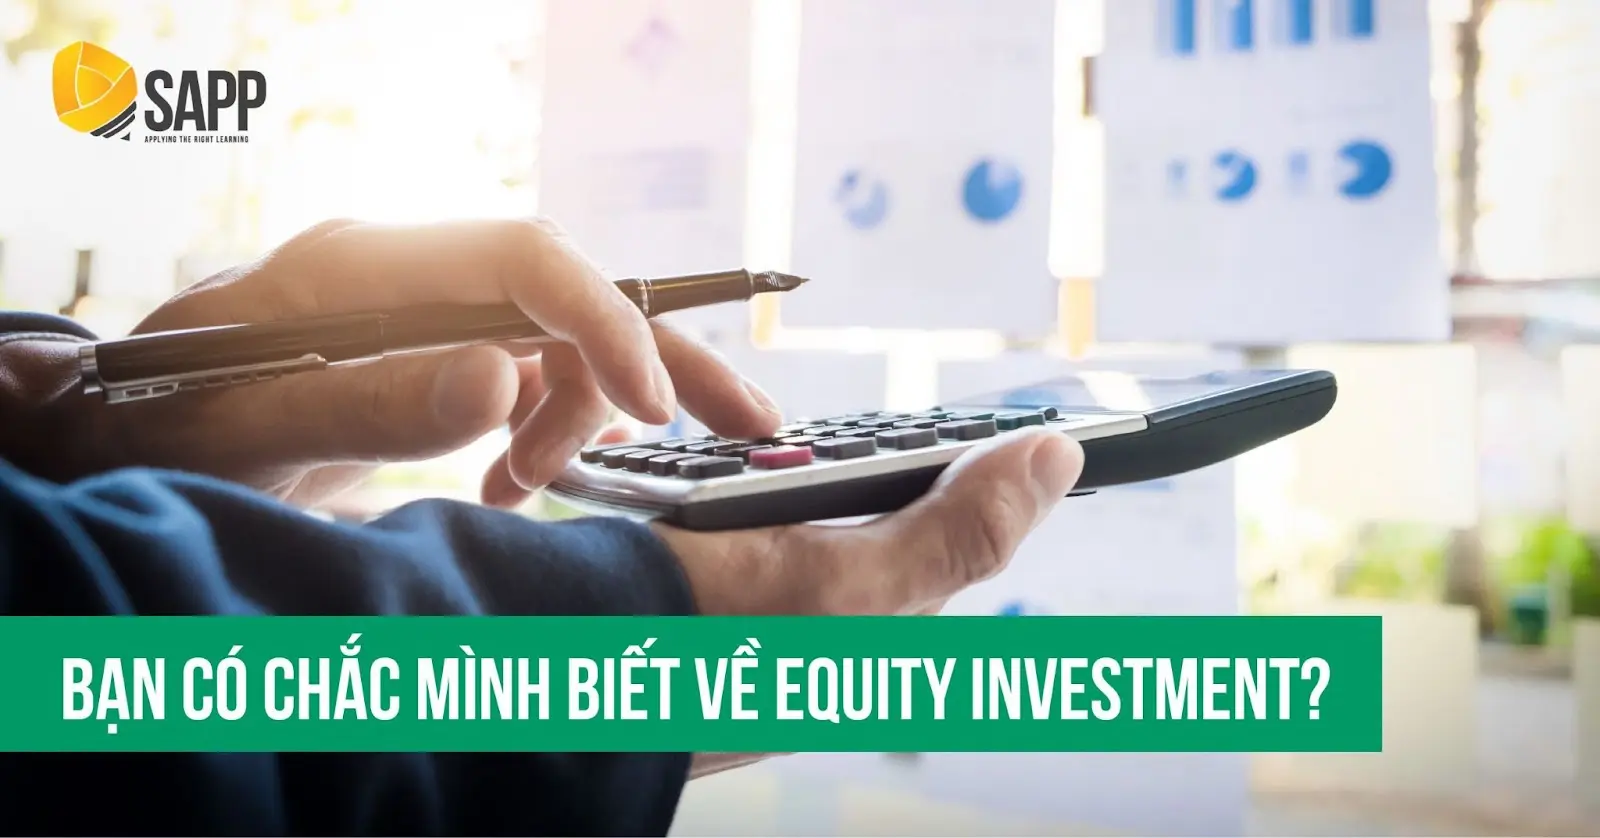 【EQUITY INVESTMENT LÀ GÌ】- Tất Tần Tật Về Equity Investment